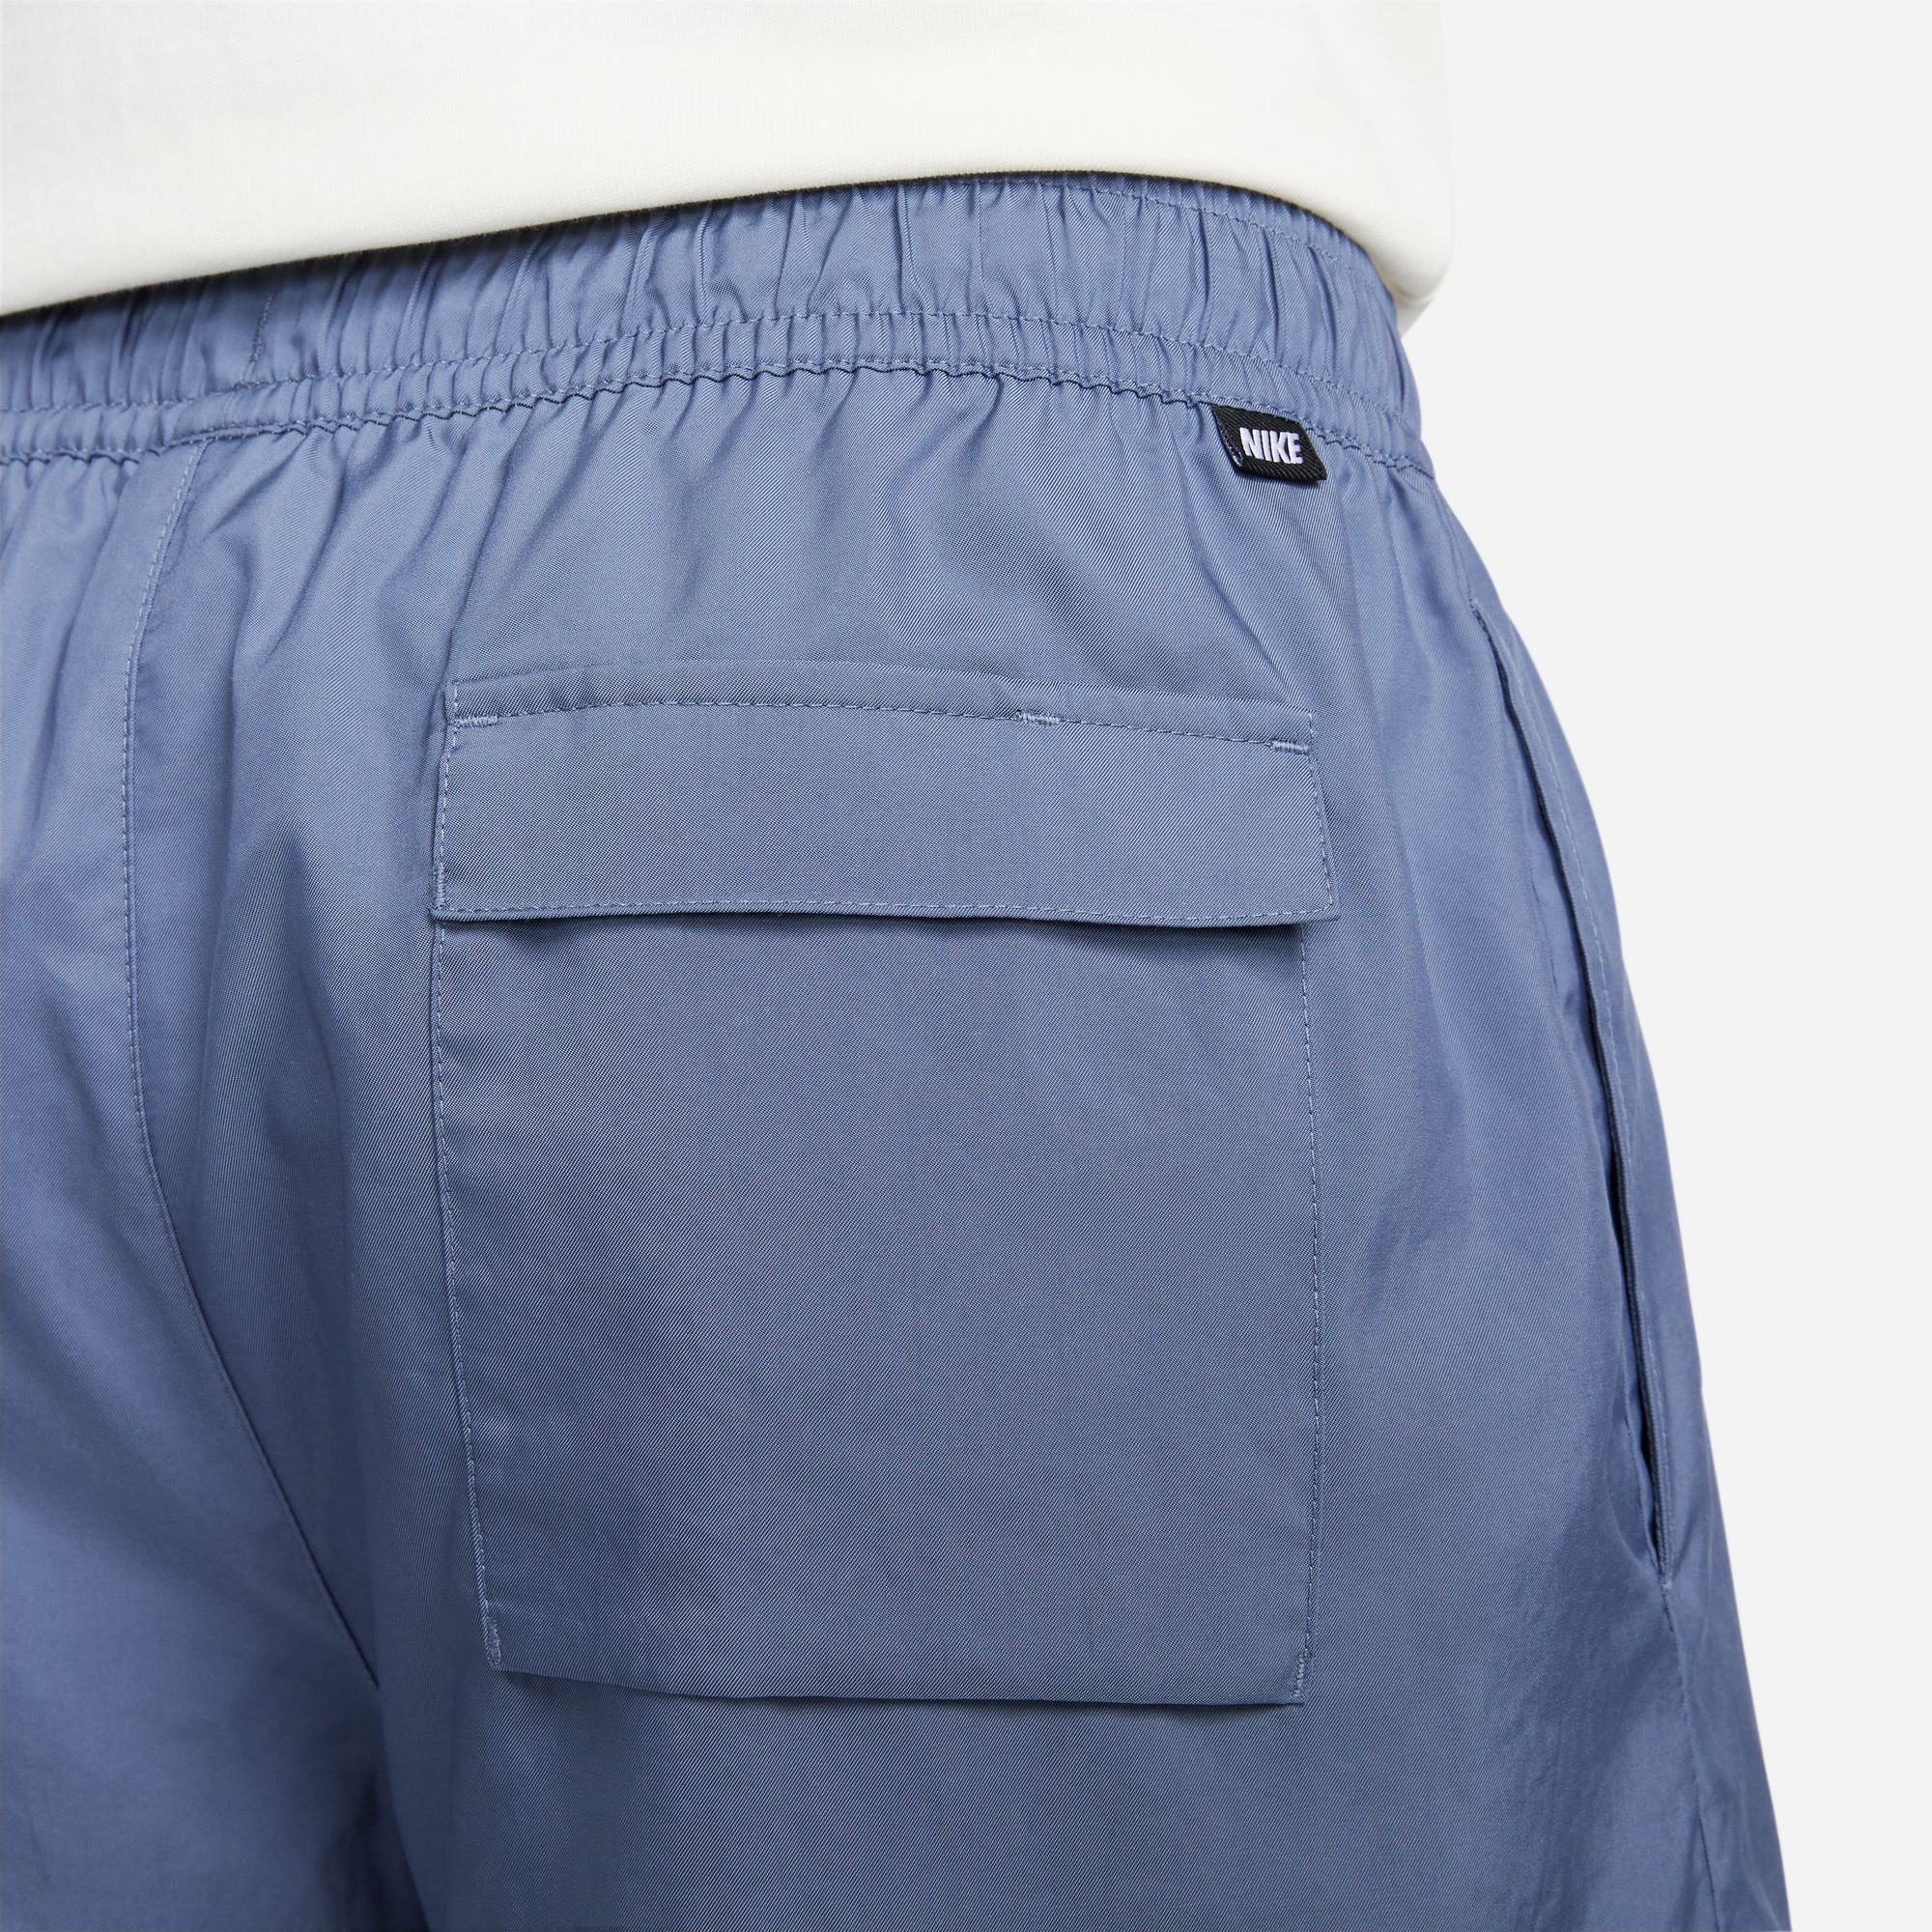 Sportswear Flow Essentials Shorts Woven Nike Lined blau Sport Men's Shorts